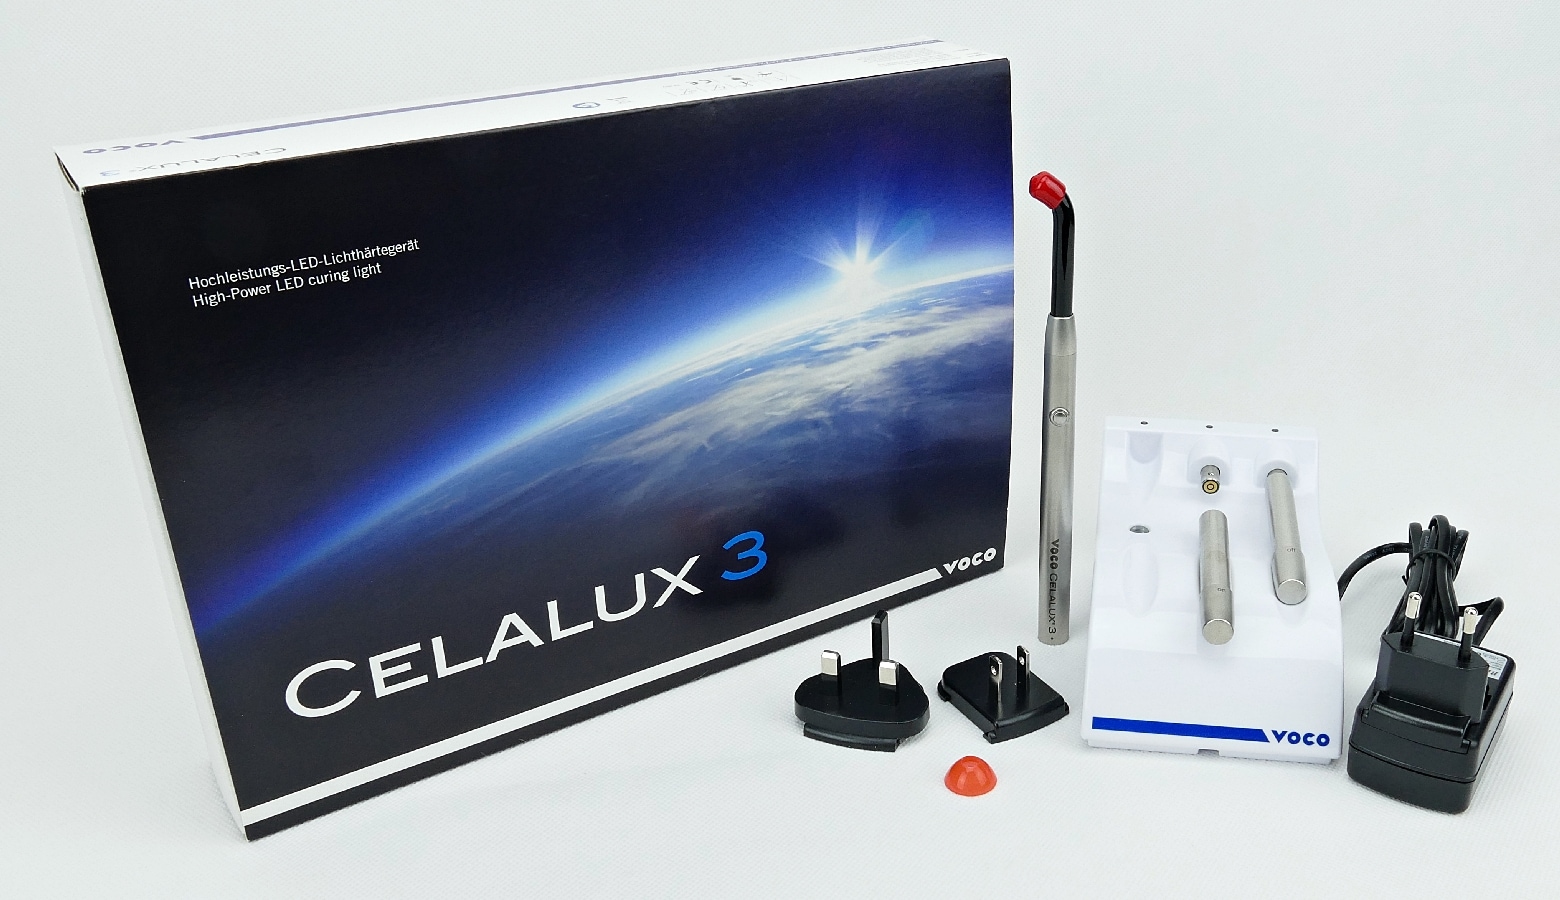 Celalux 3 LED